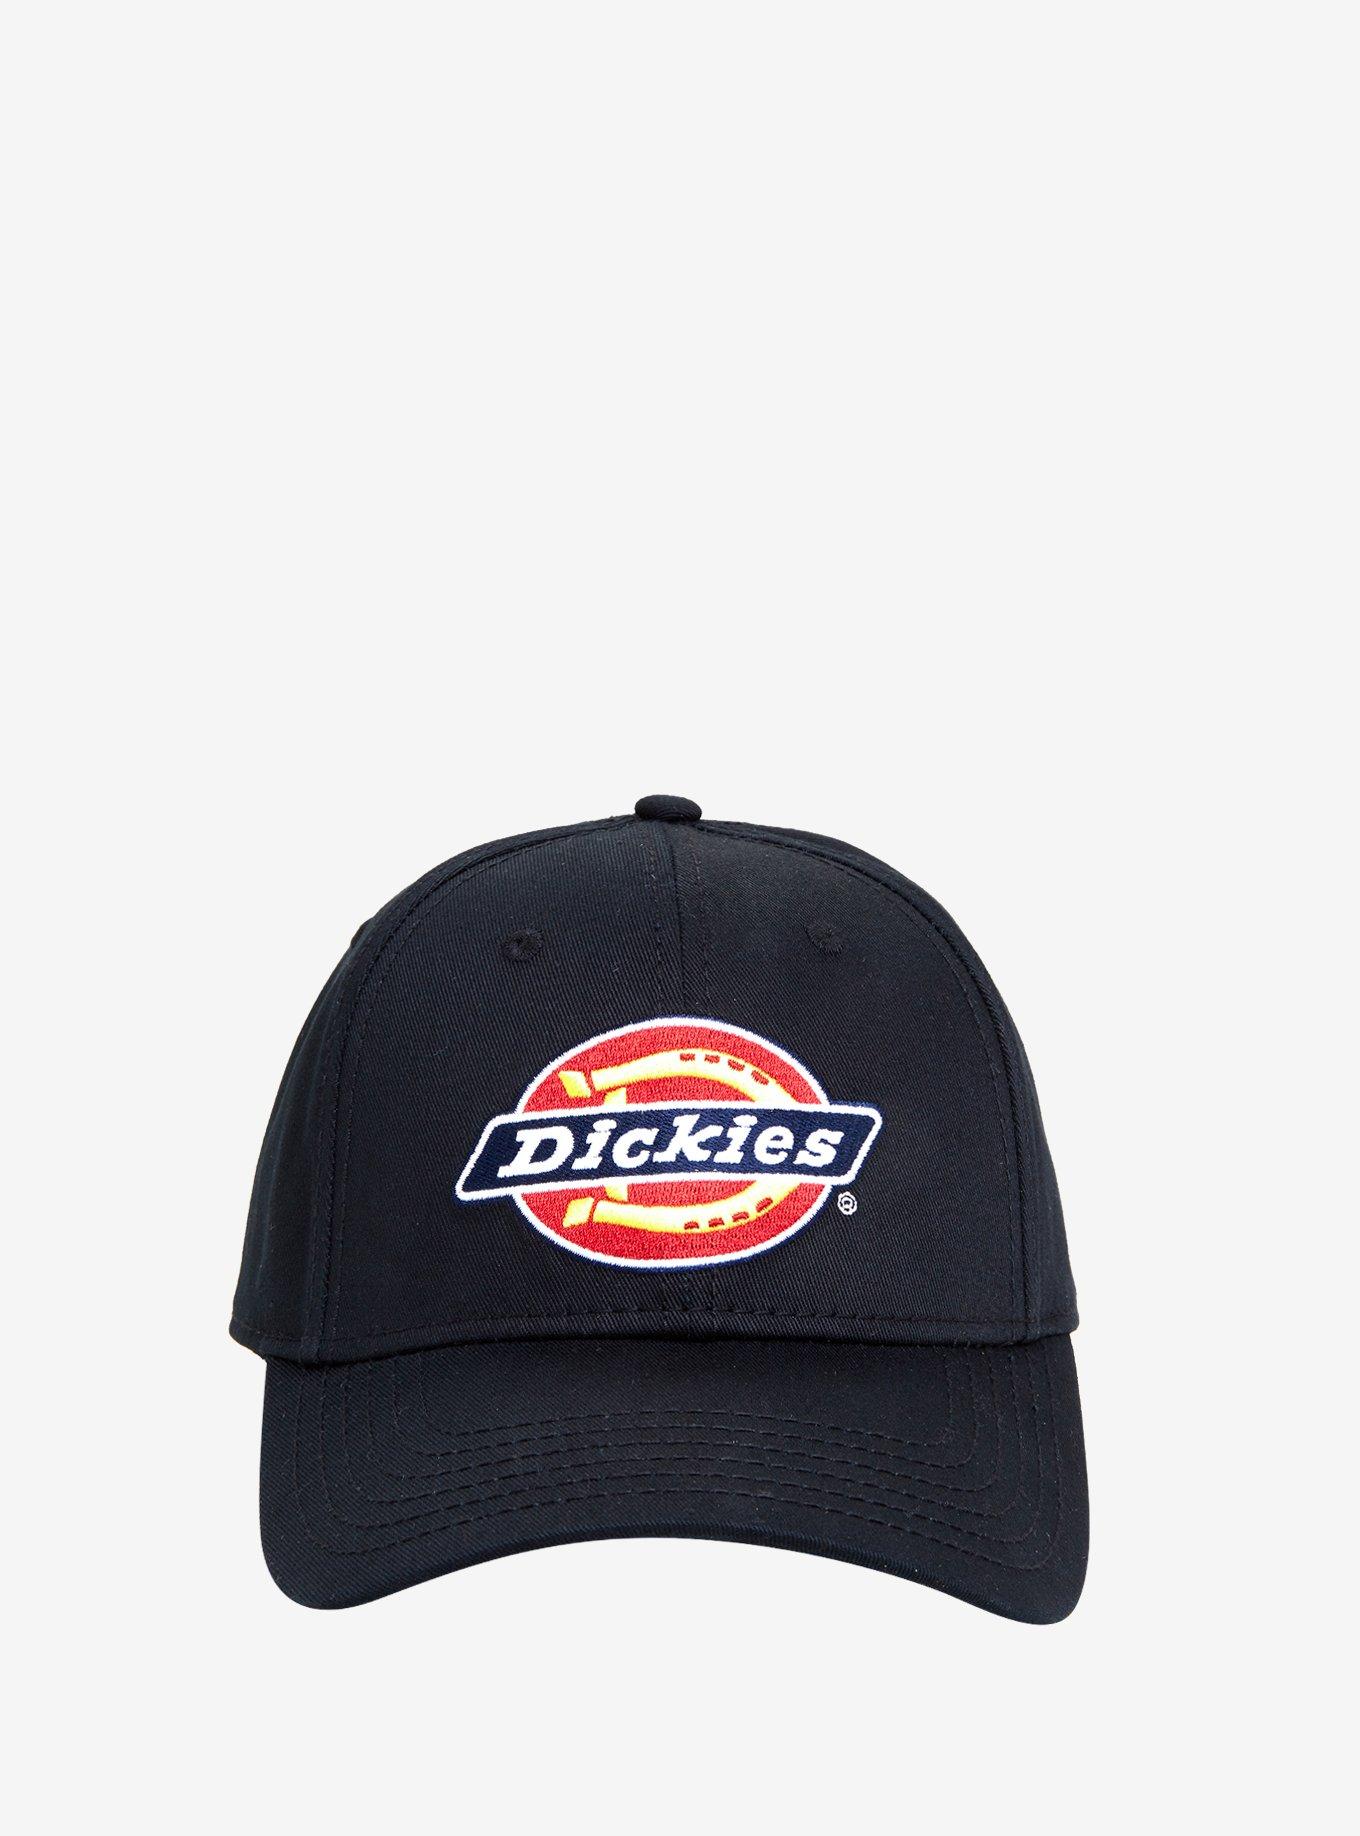 Dickies Black Hat, , alternate